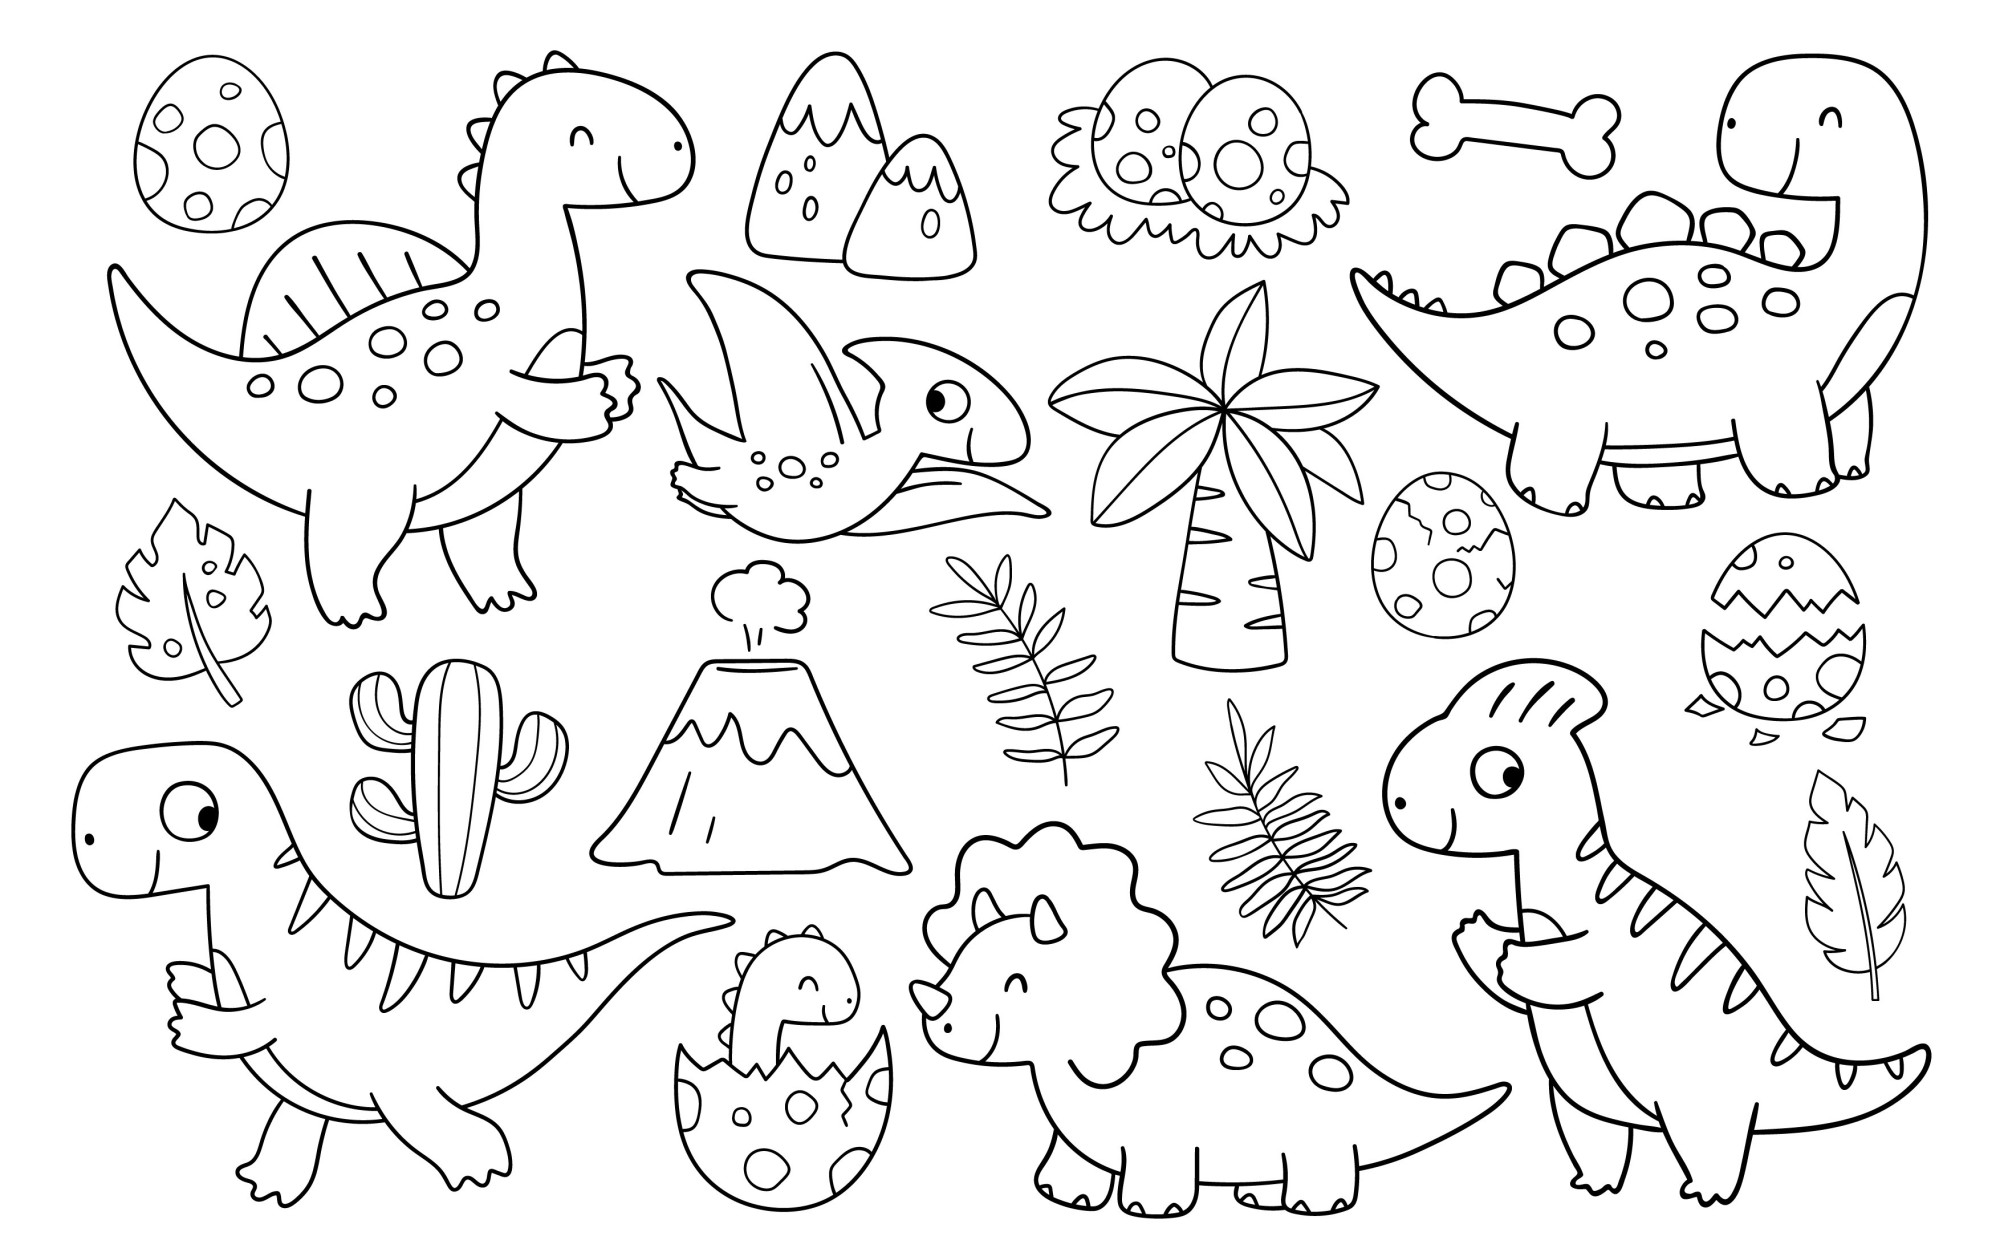 Раскраска для детей: набор детских динозавриков